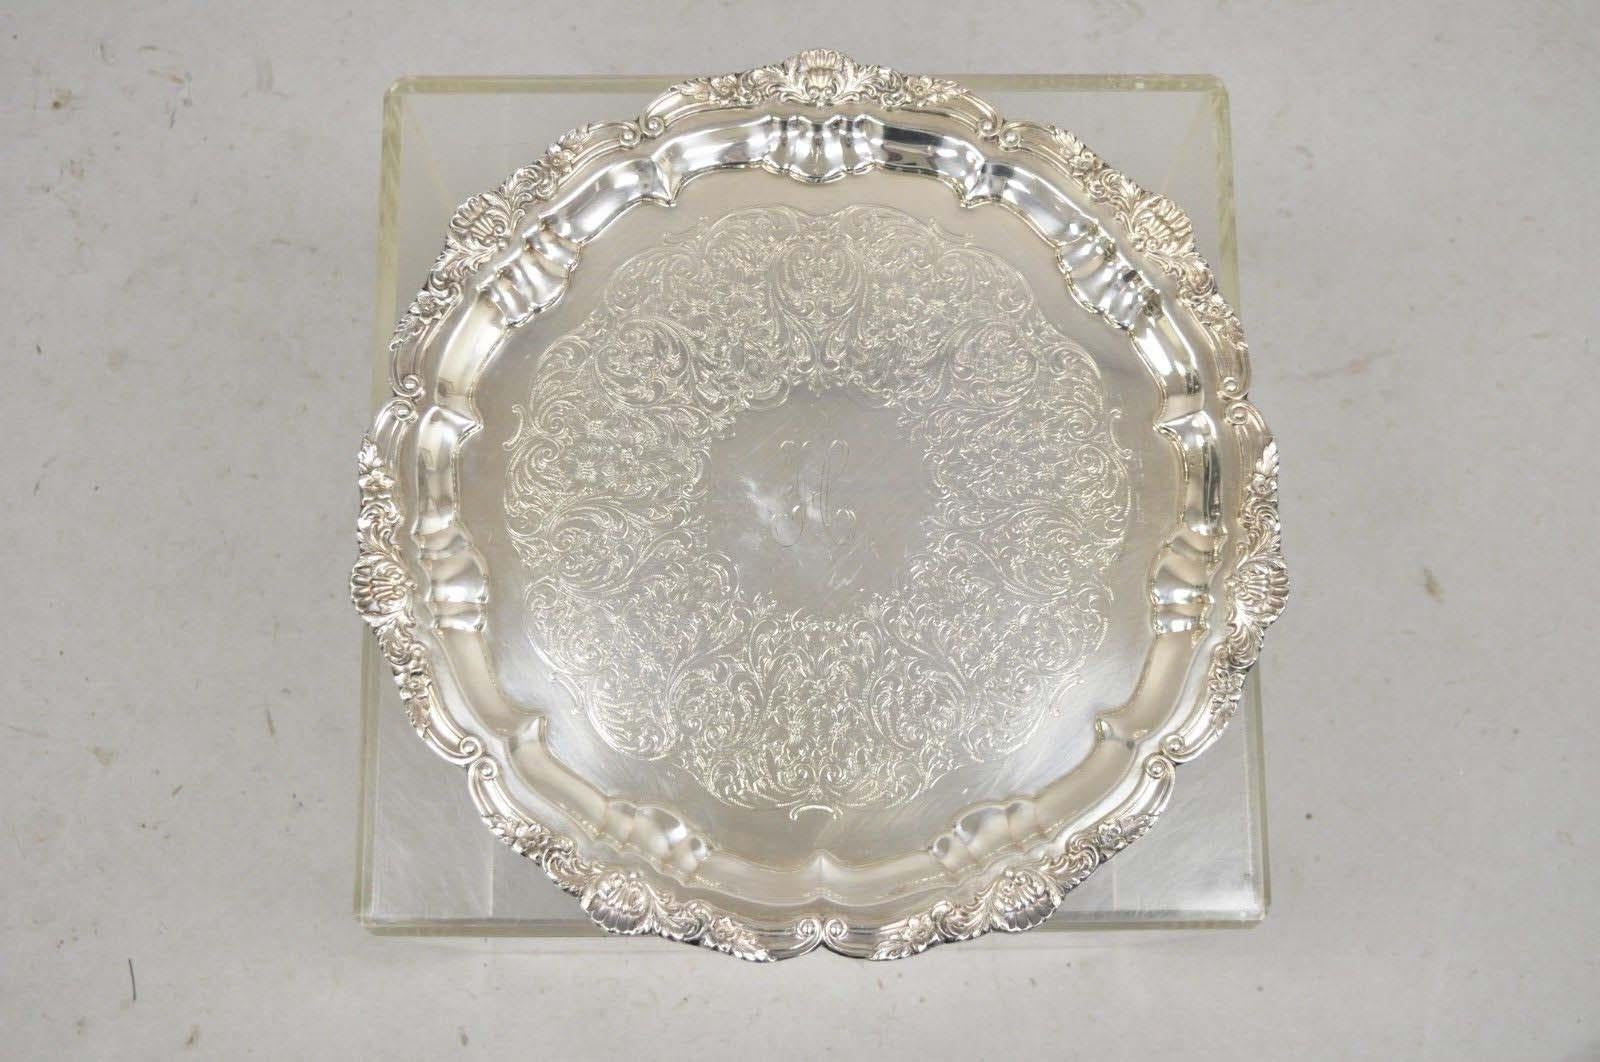 Vintage EPCA Silverplate by Poole 3216 Round Platter Tray - Graviert. Das Monogramm 